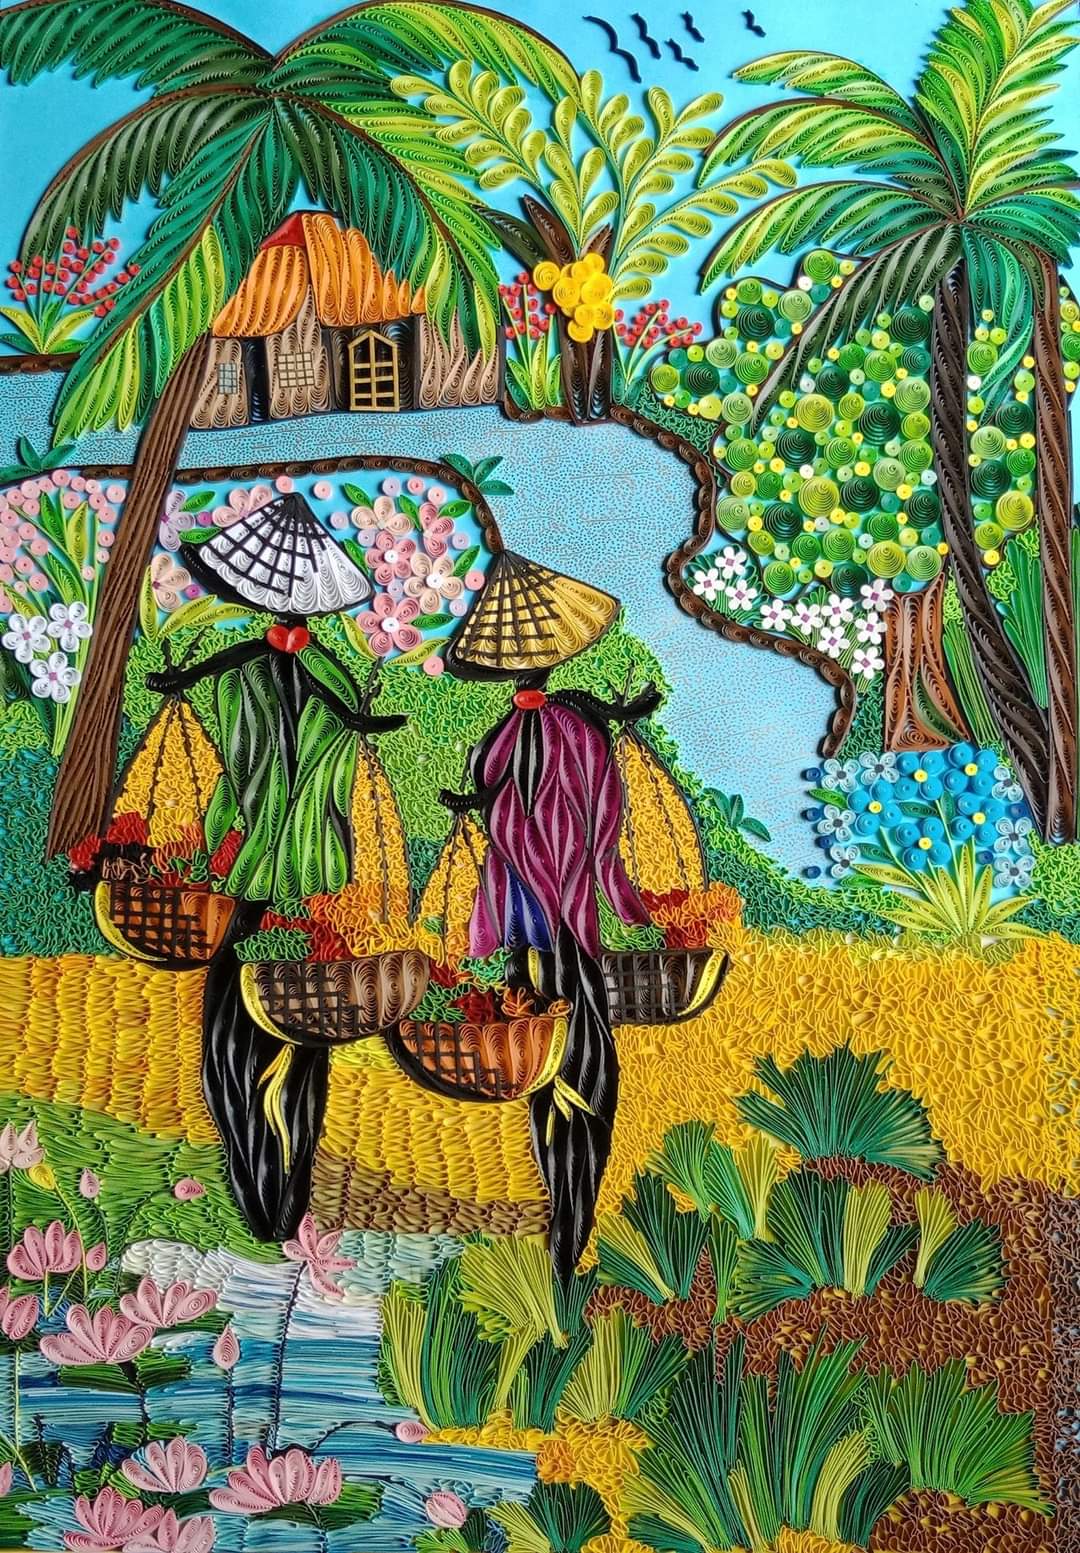 Màu sắc là nguồn cảm hứng lớn nhất của nghệ thuật và tranh sắc màu quê hương Gia Lai sẽ khiến bạn nhớ lại những ngày tuổi thơ đầy màu sắc. Hãy ngắm nhìn những bức tranh này để của những cảm xúc rực rỡ và tươi vui.